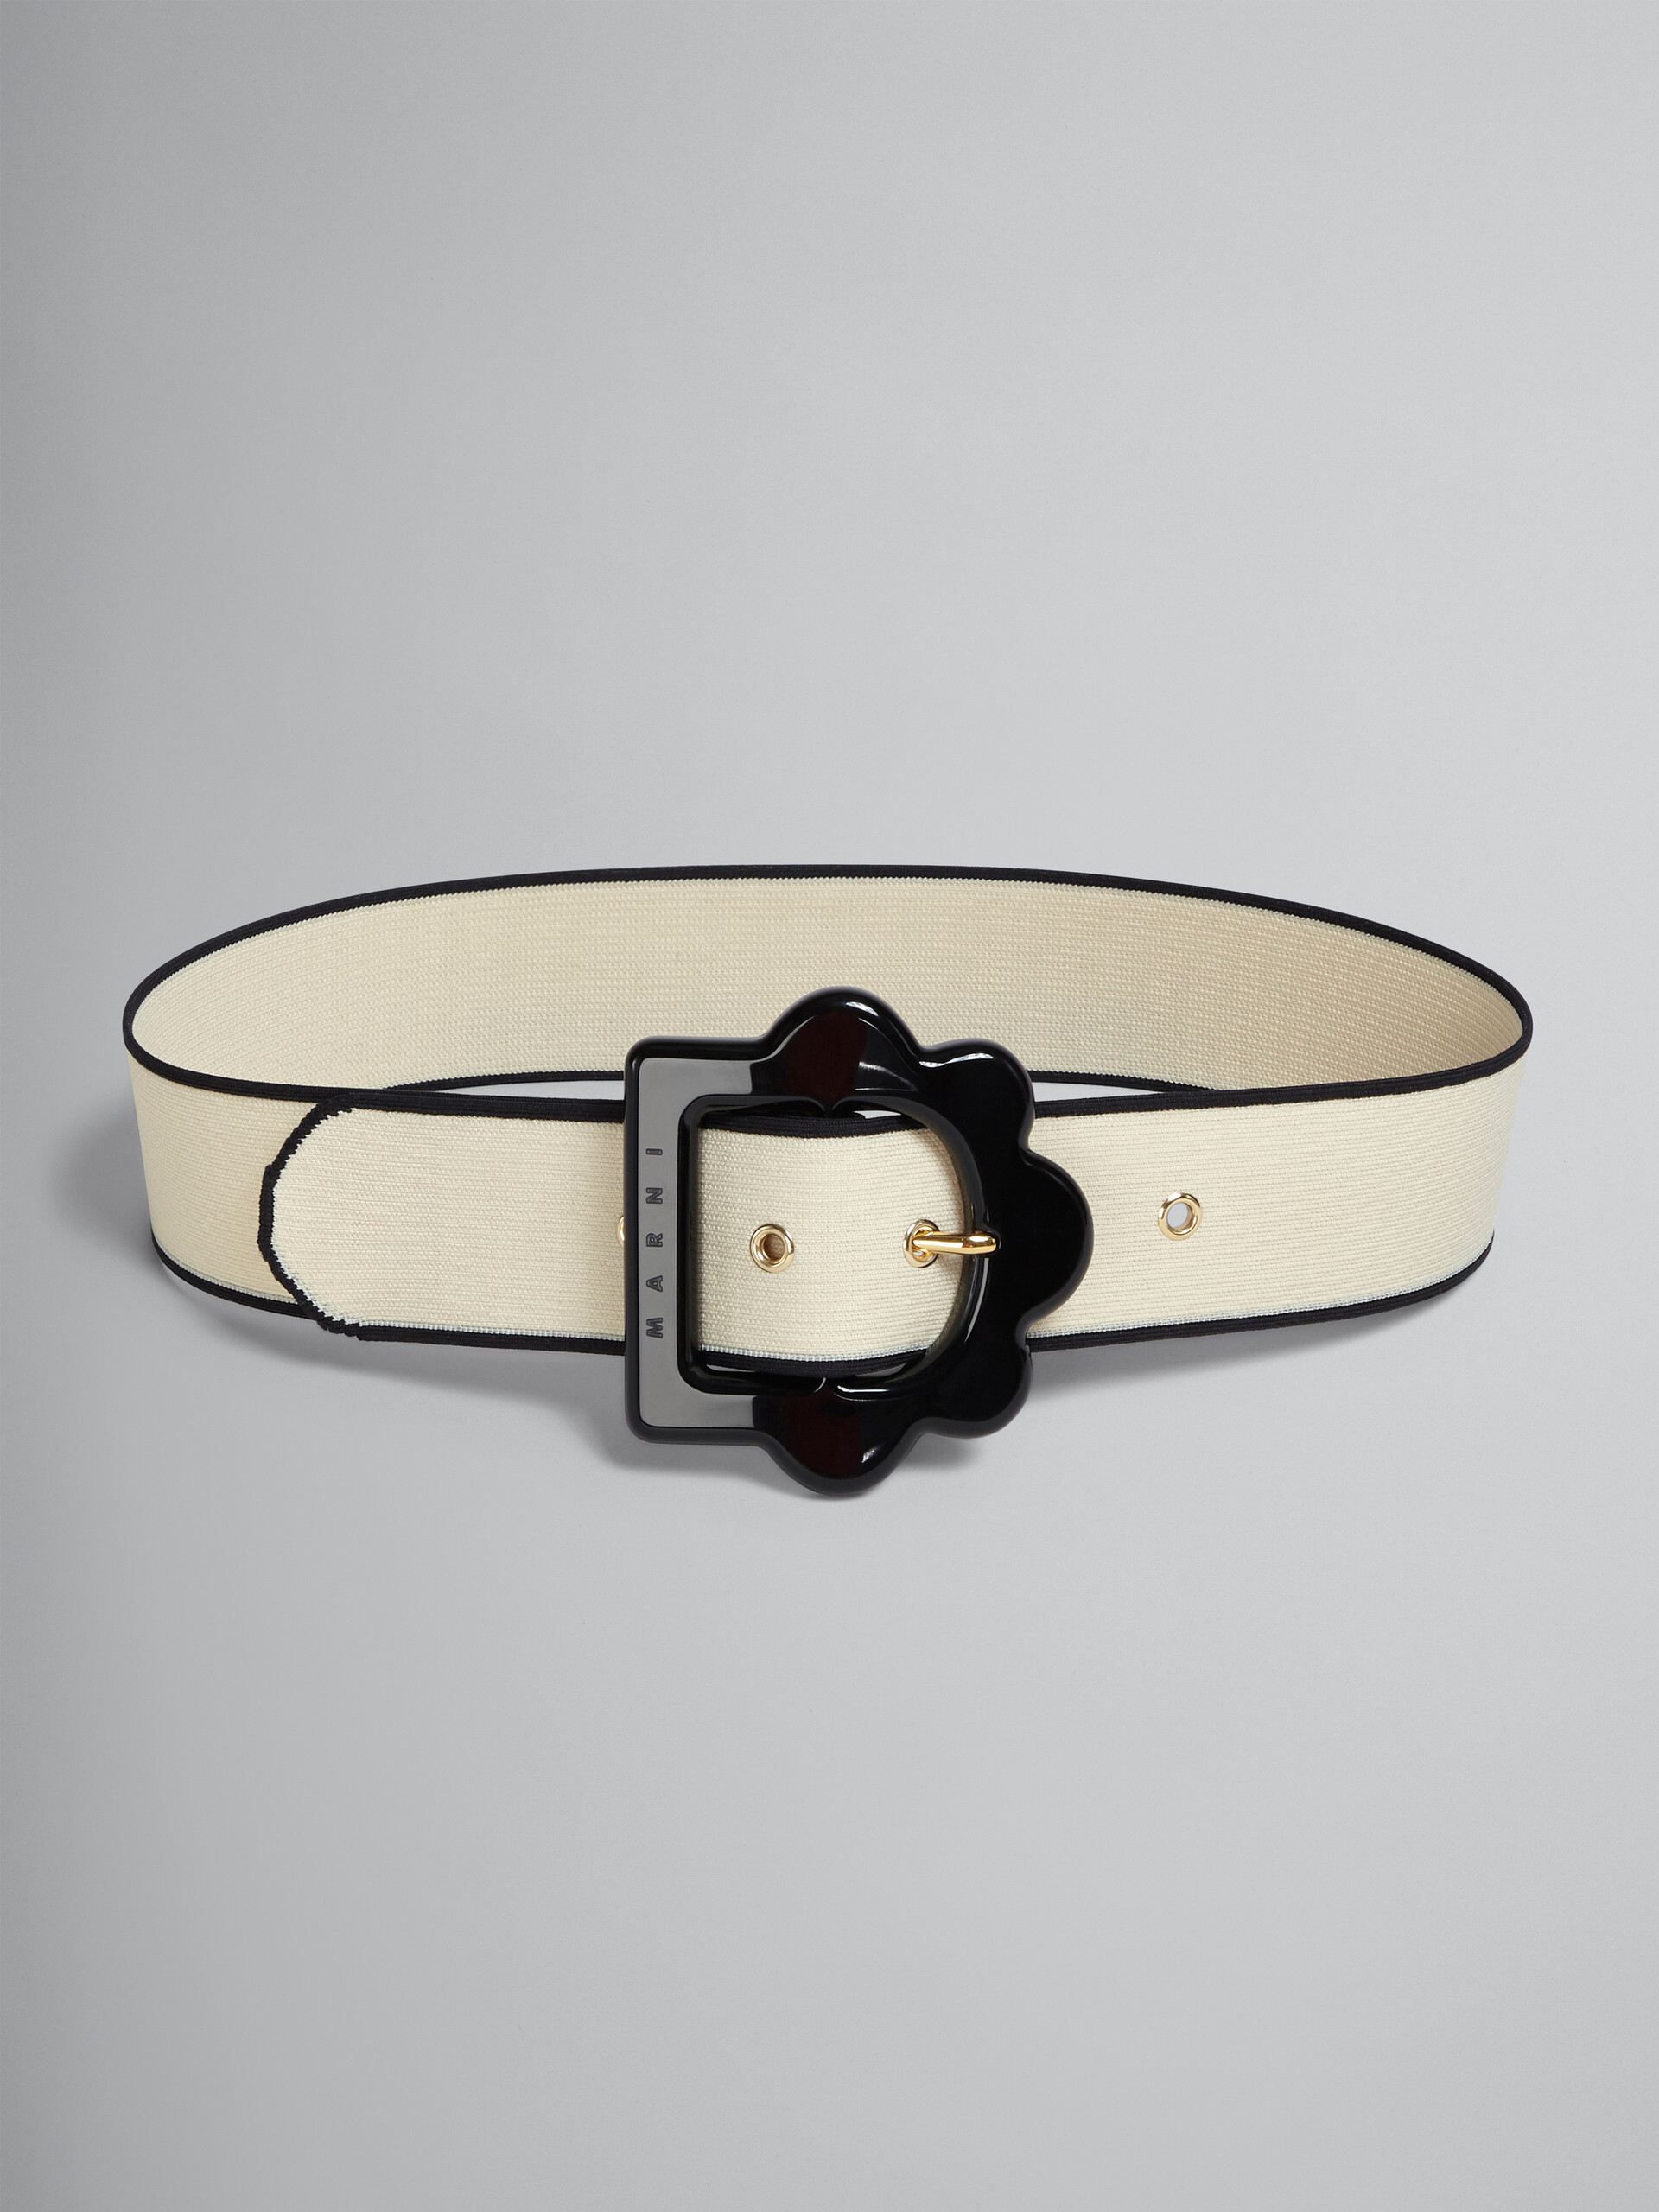 White and black jacquard flower belt - Belts - Image 1